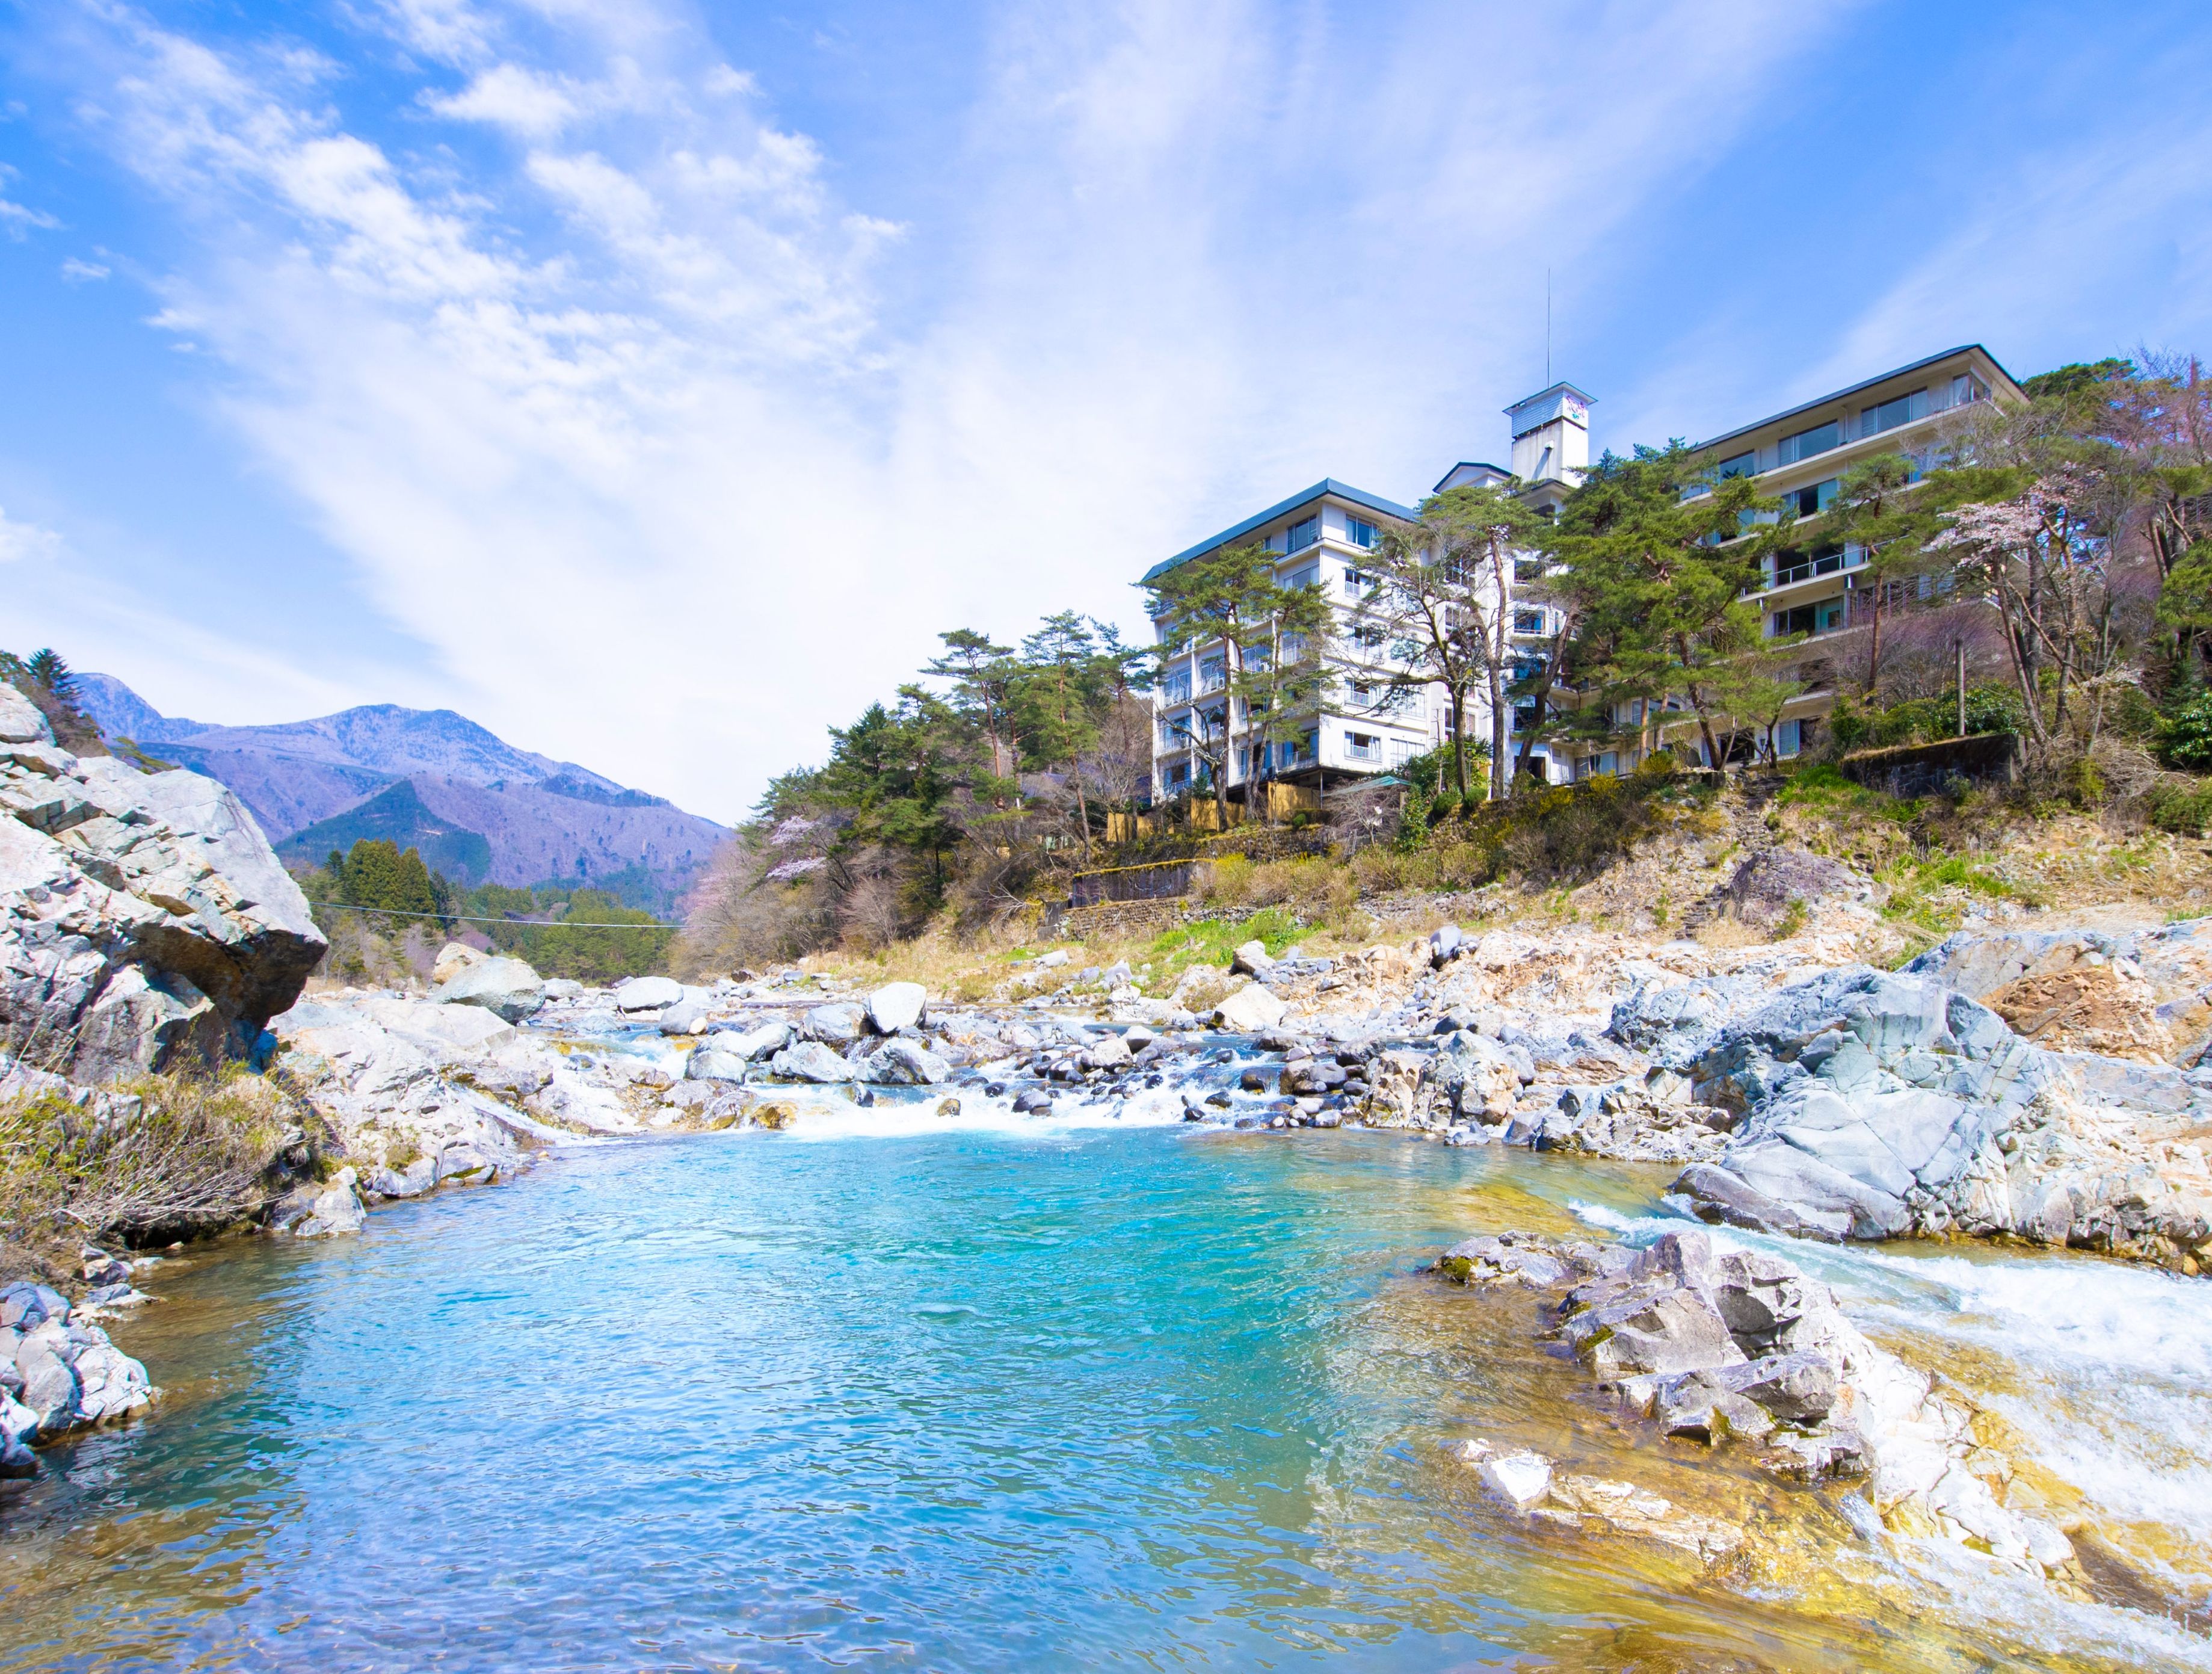 家族3人で鬼怒川でゆっくり露天風呂を満喫したい。 1泊2日で3人2万円以内の宿はないでしようか。